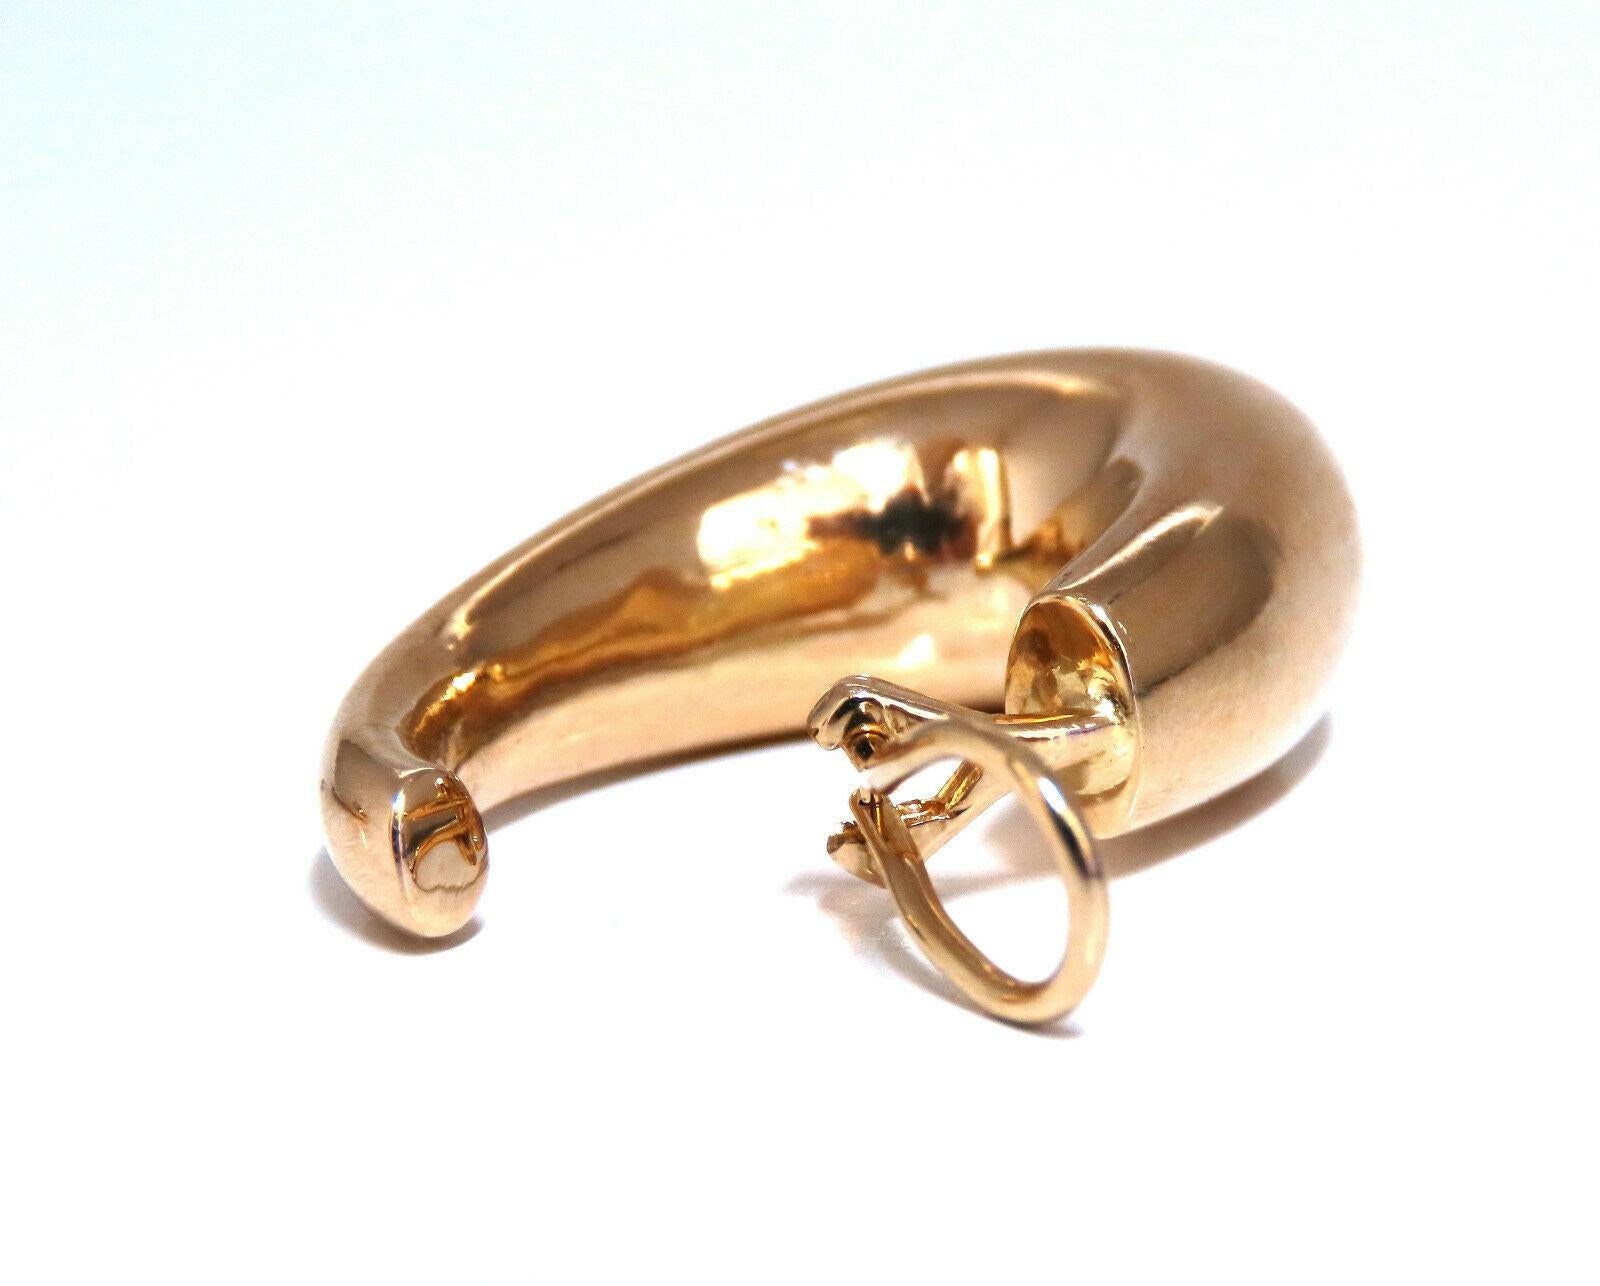 Langgestreckte röhrenförmige Ohrringe aus Gold

Abmessungen der Ohrringe:

21 mm Durchmesser.

33 mm lang

10 mm breit.

15,8 Gramm / 14kt. Gelbgold

Ohrringe sind wunderschön gemacht